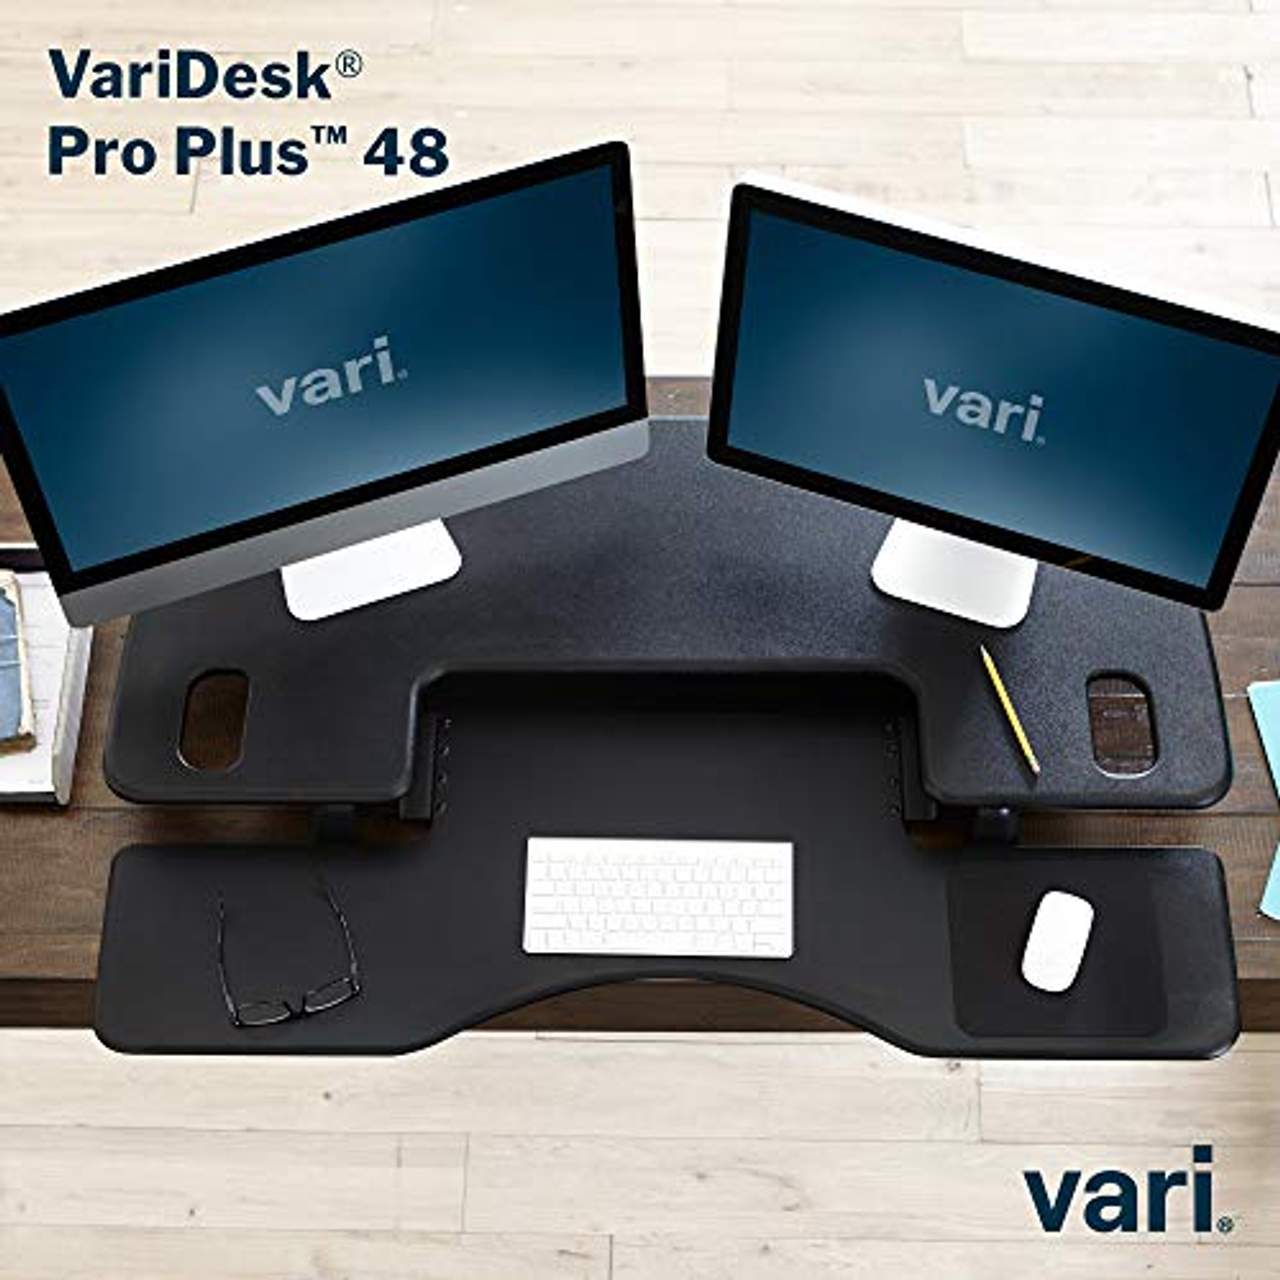 Pro Plus 48 von Vari